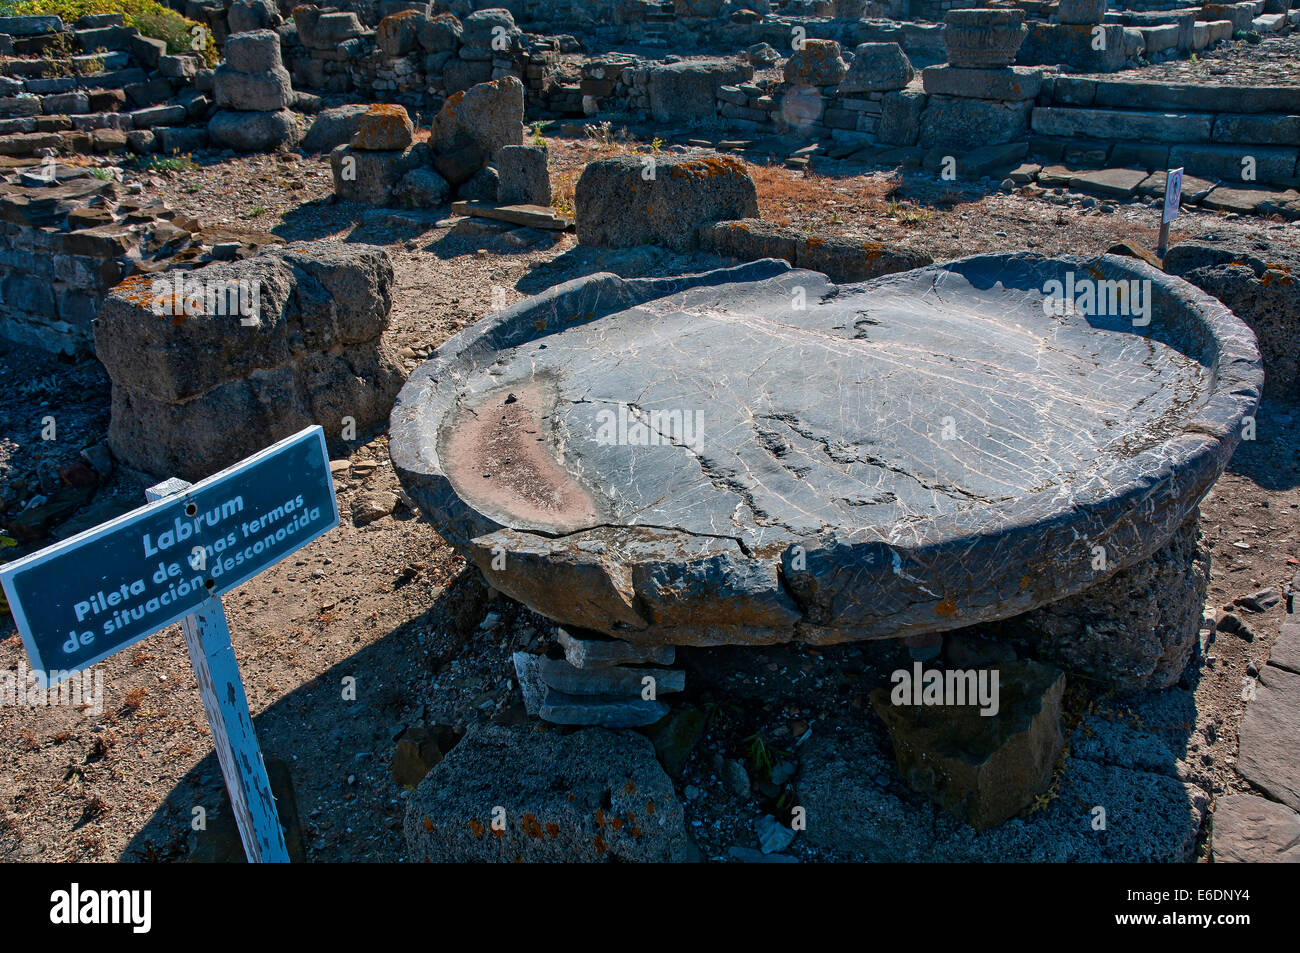 Le rovine romane di Baelo Claudia -2secolo BC- Labrum, Tarifa, Cadice provincia, regione dell'Andalusia, Spagna, Europa Foto Stock